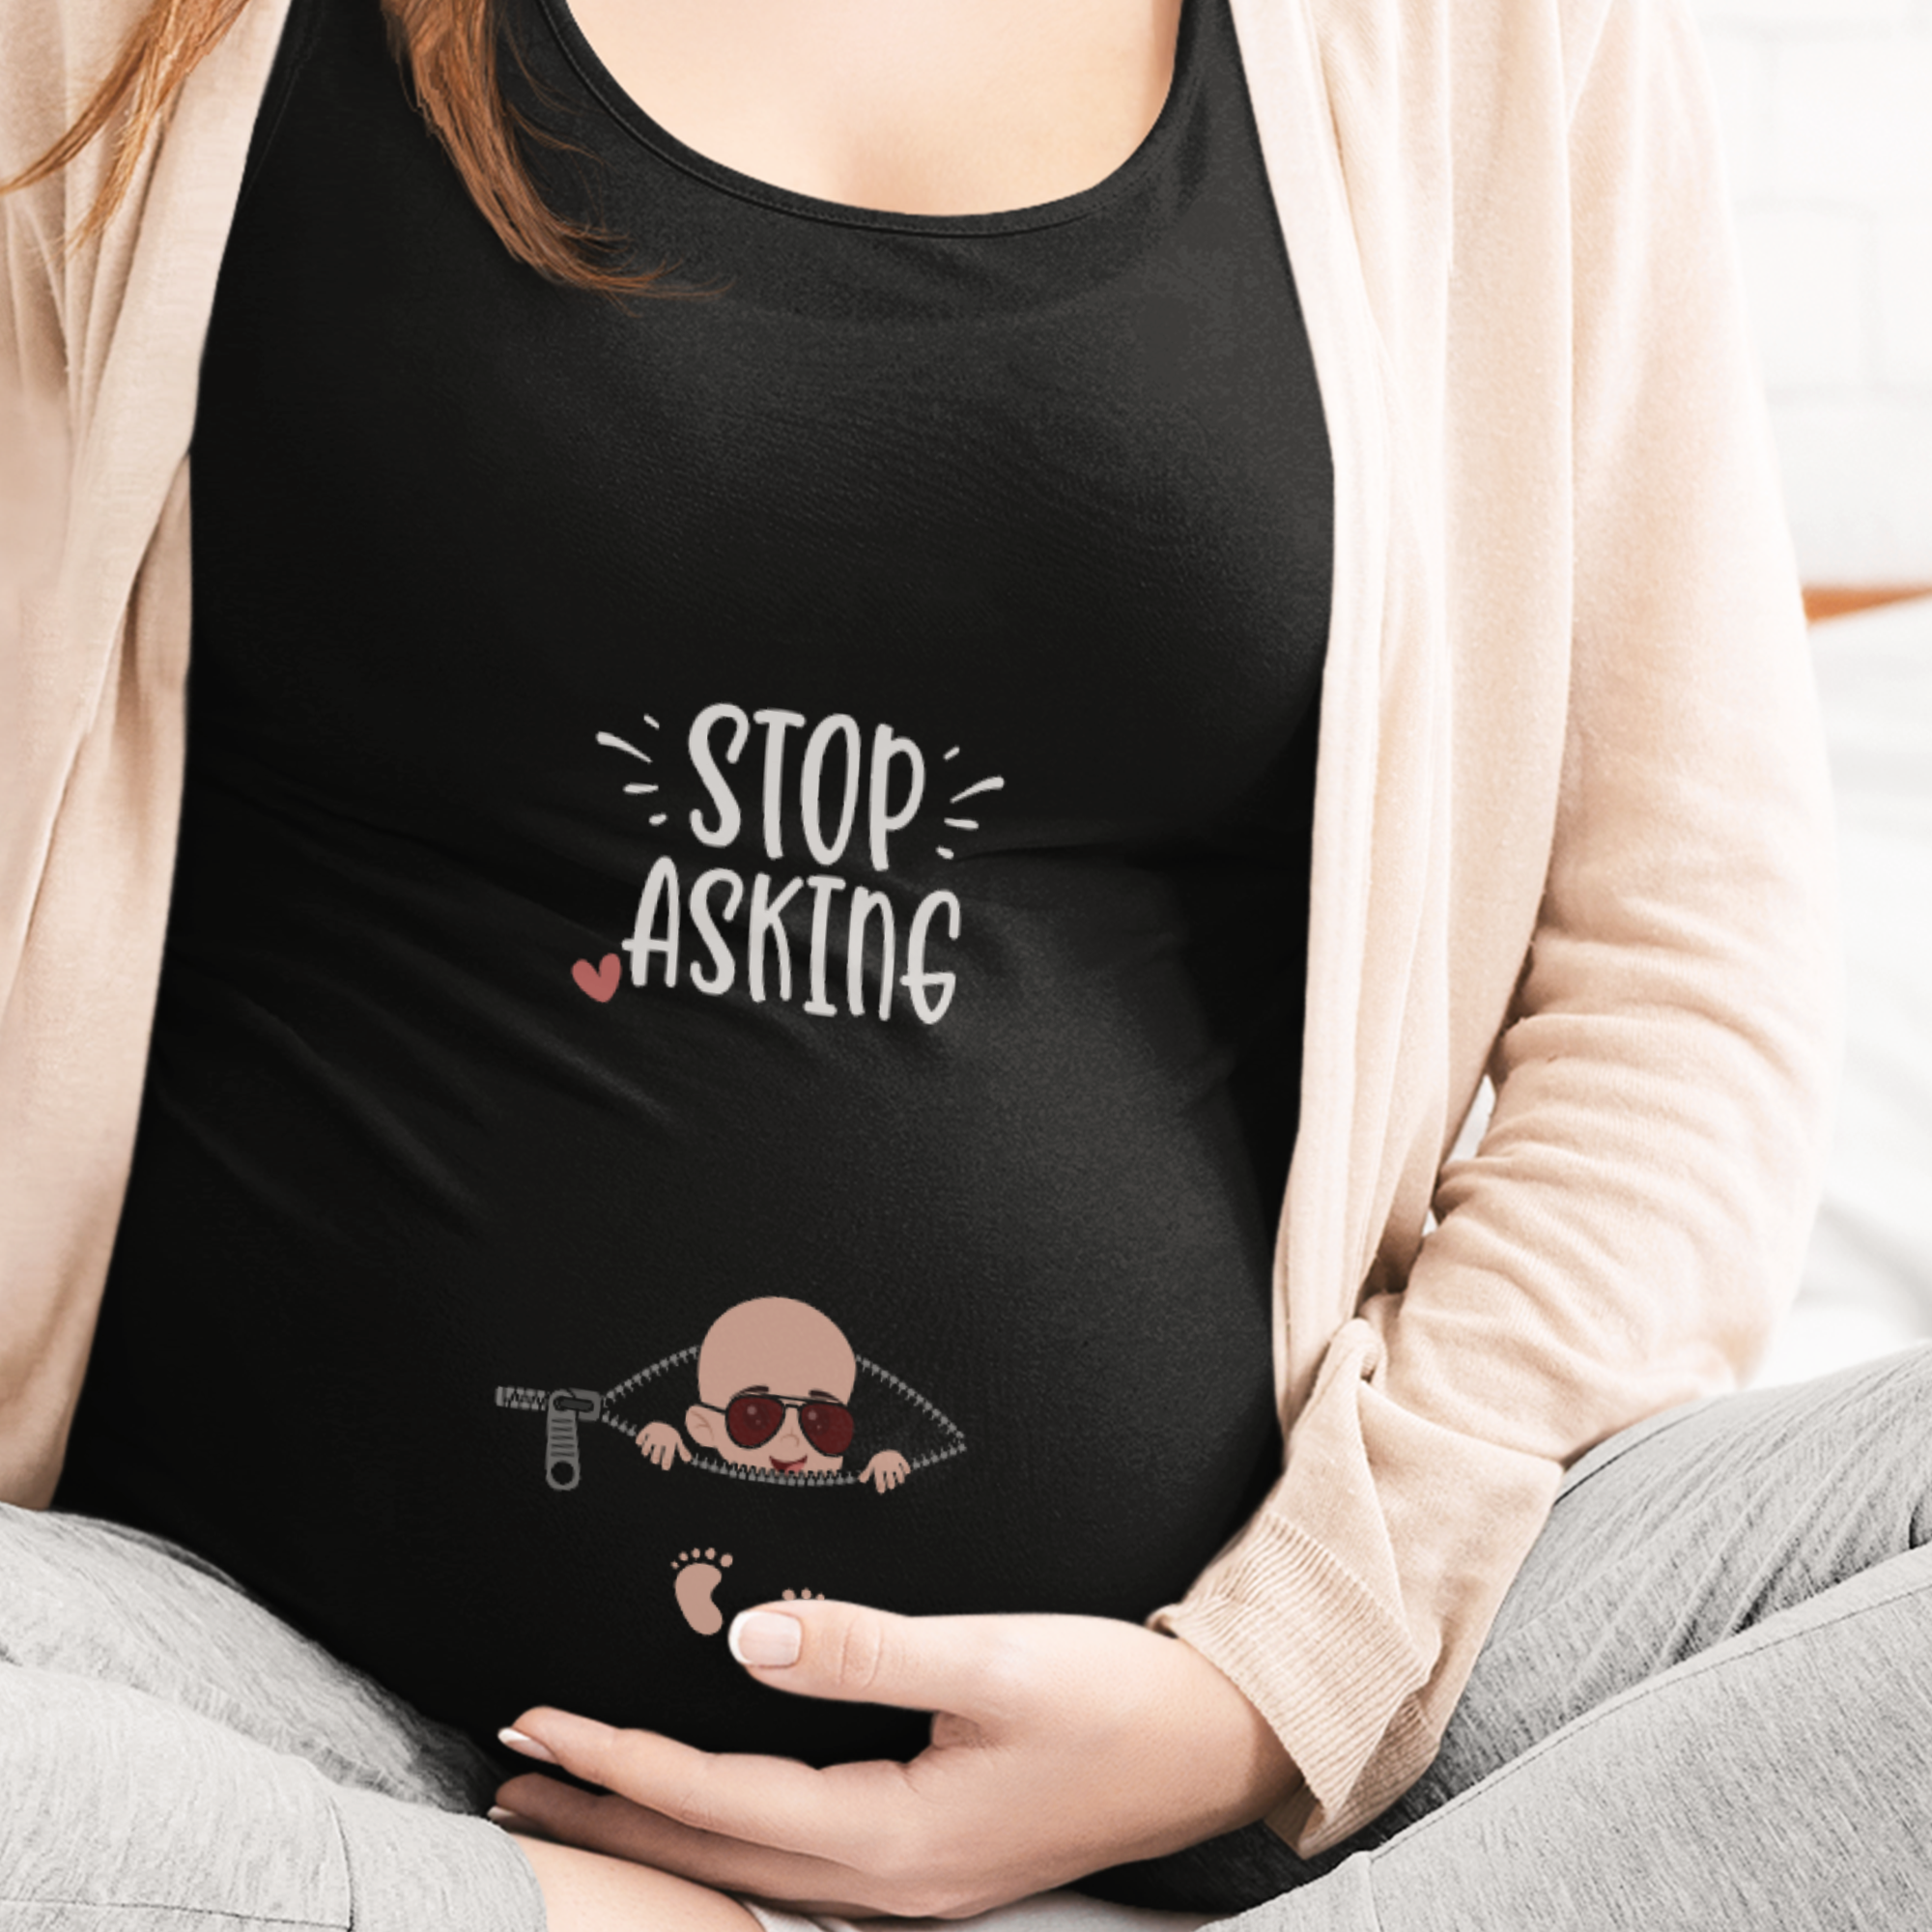 Stop Asking Schwangerschafts T-Shirt - DESIGNSBYJNK5.COM